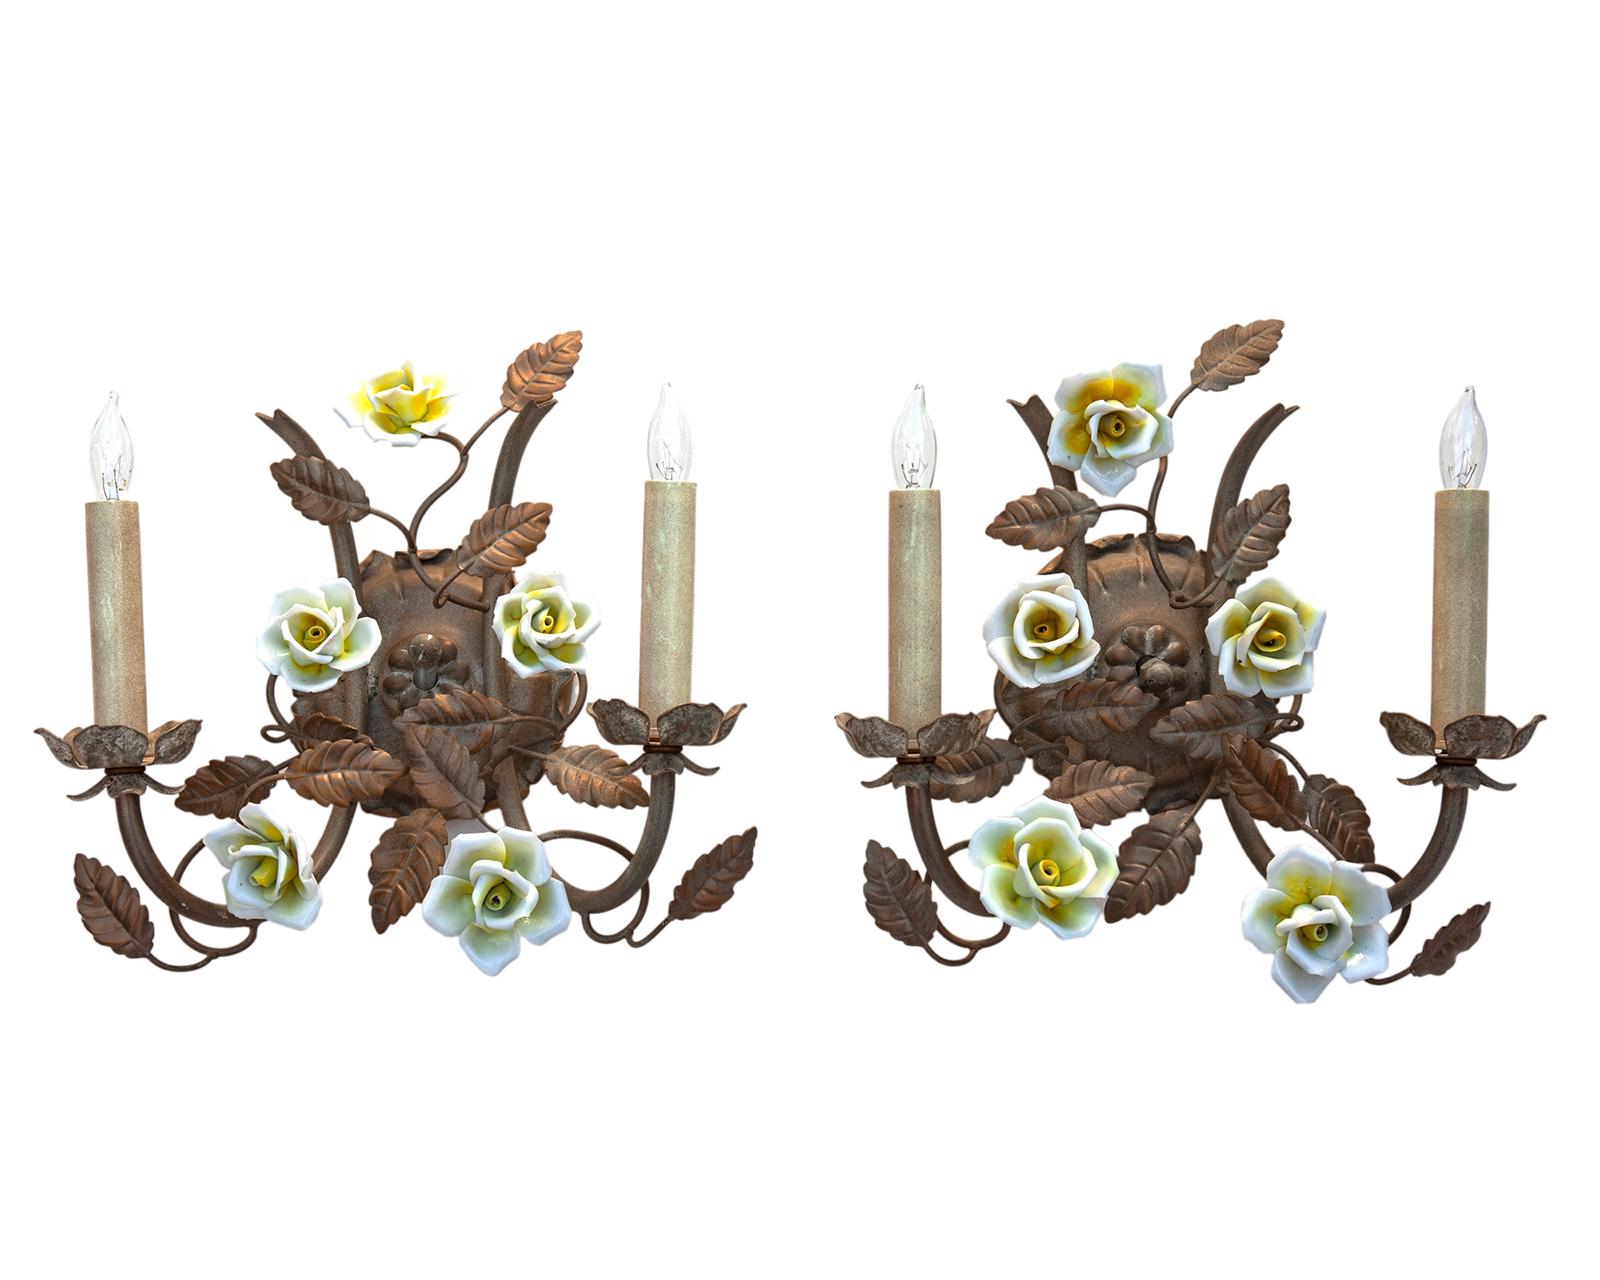 Charmantes Paar Wandleuchter mit Keramikblumen, verdrahtet für US.
Die Wandleuchter sind in vorgefundenem Zustand mit der Originallackierung.
Eine verblasste Metalloberfläche im Hintergrund, die nur die Blumen hervorhebt, wenn sie beleuchtet sind.

